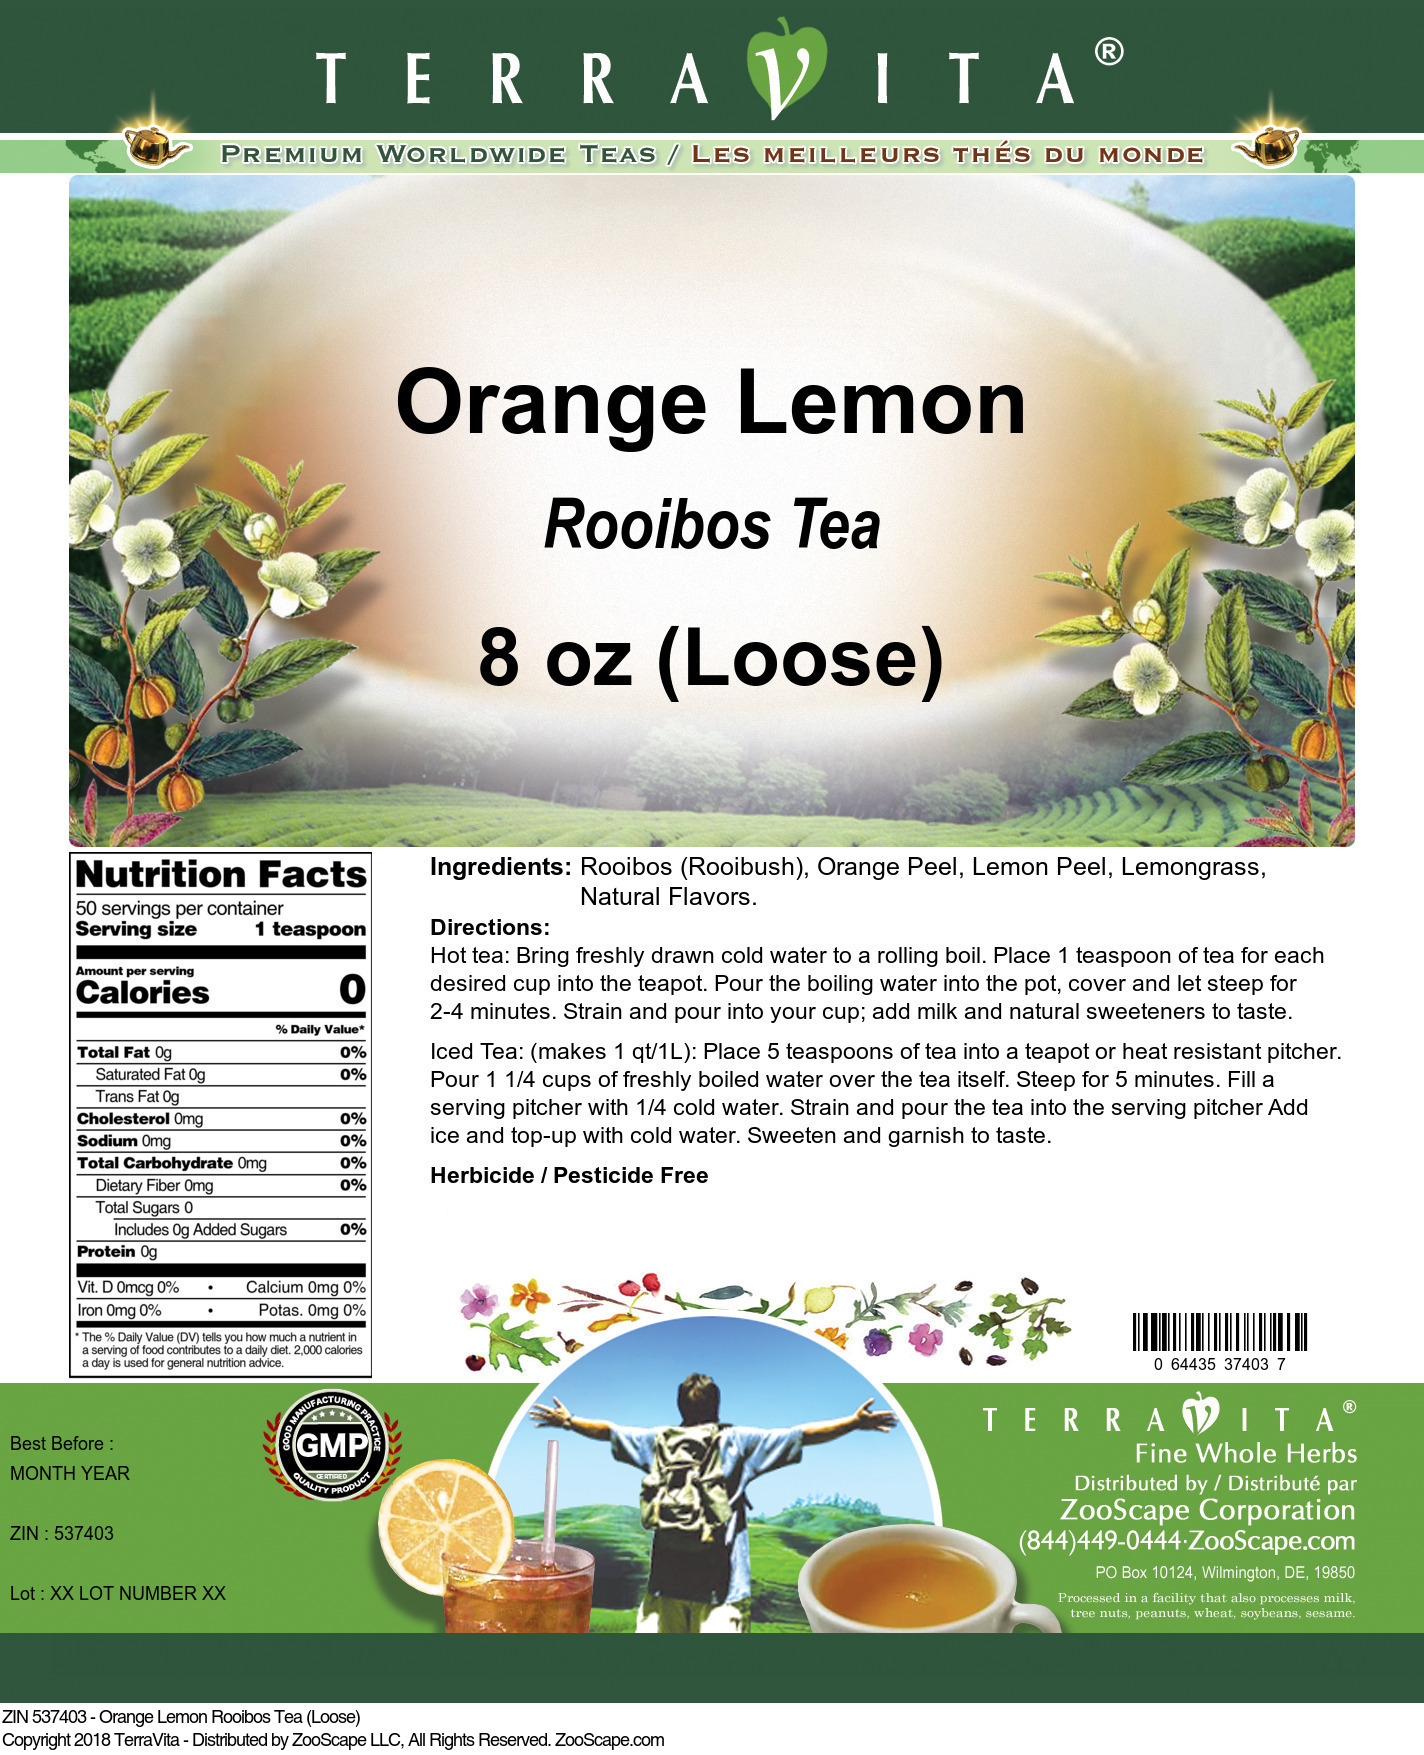 Orange Lemon Rooibos Tea (Loose) - Label